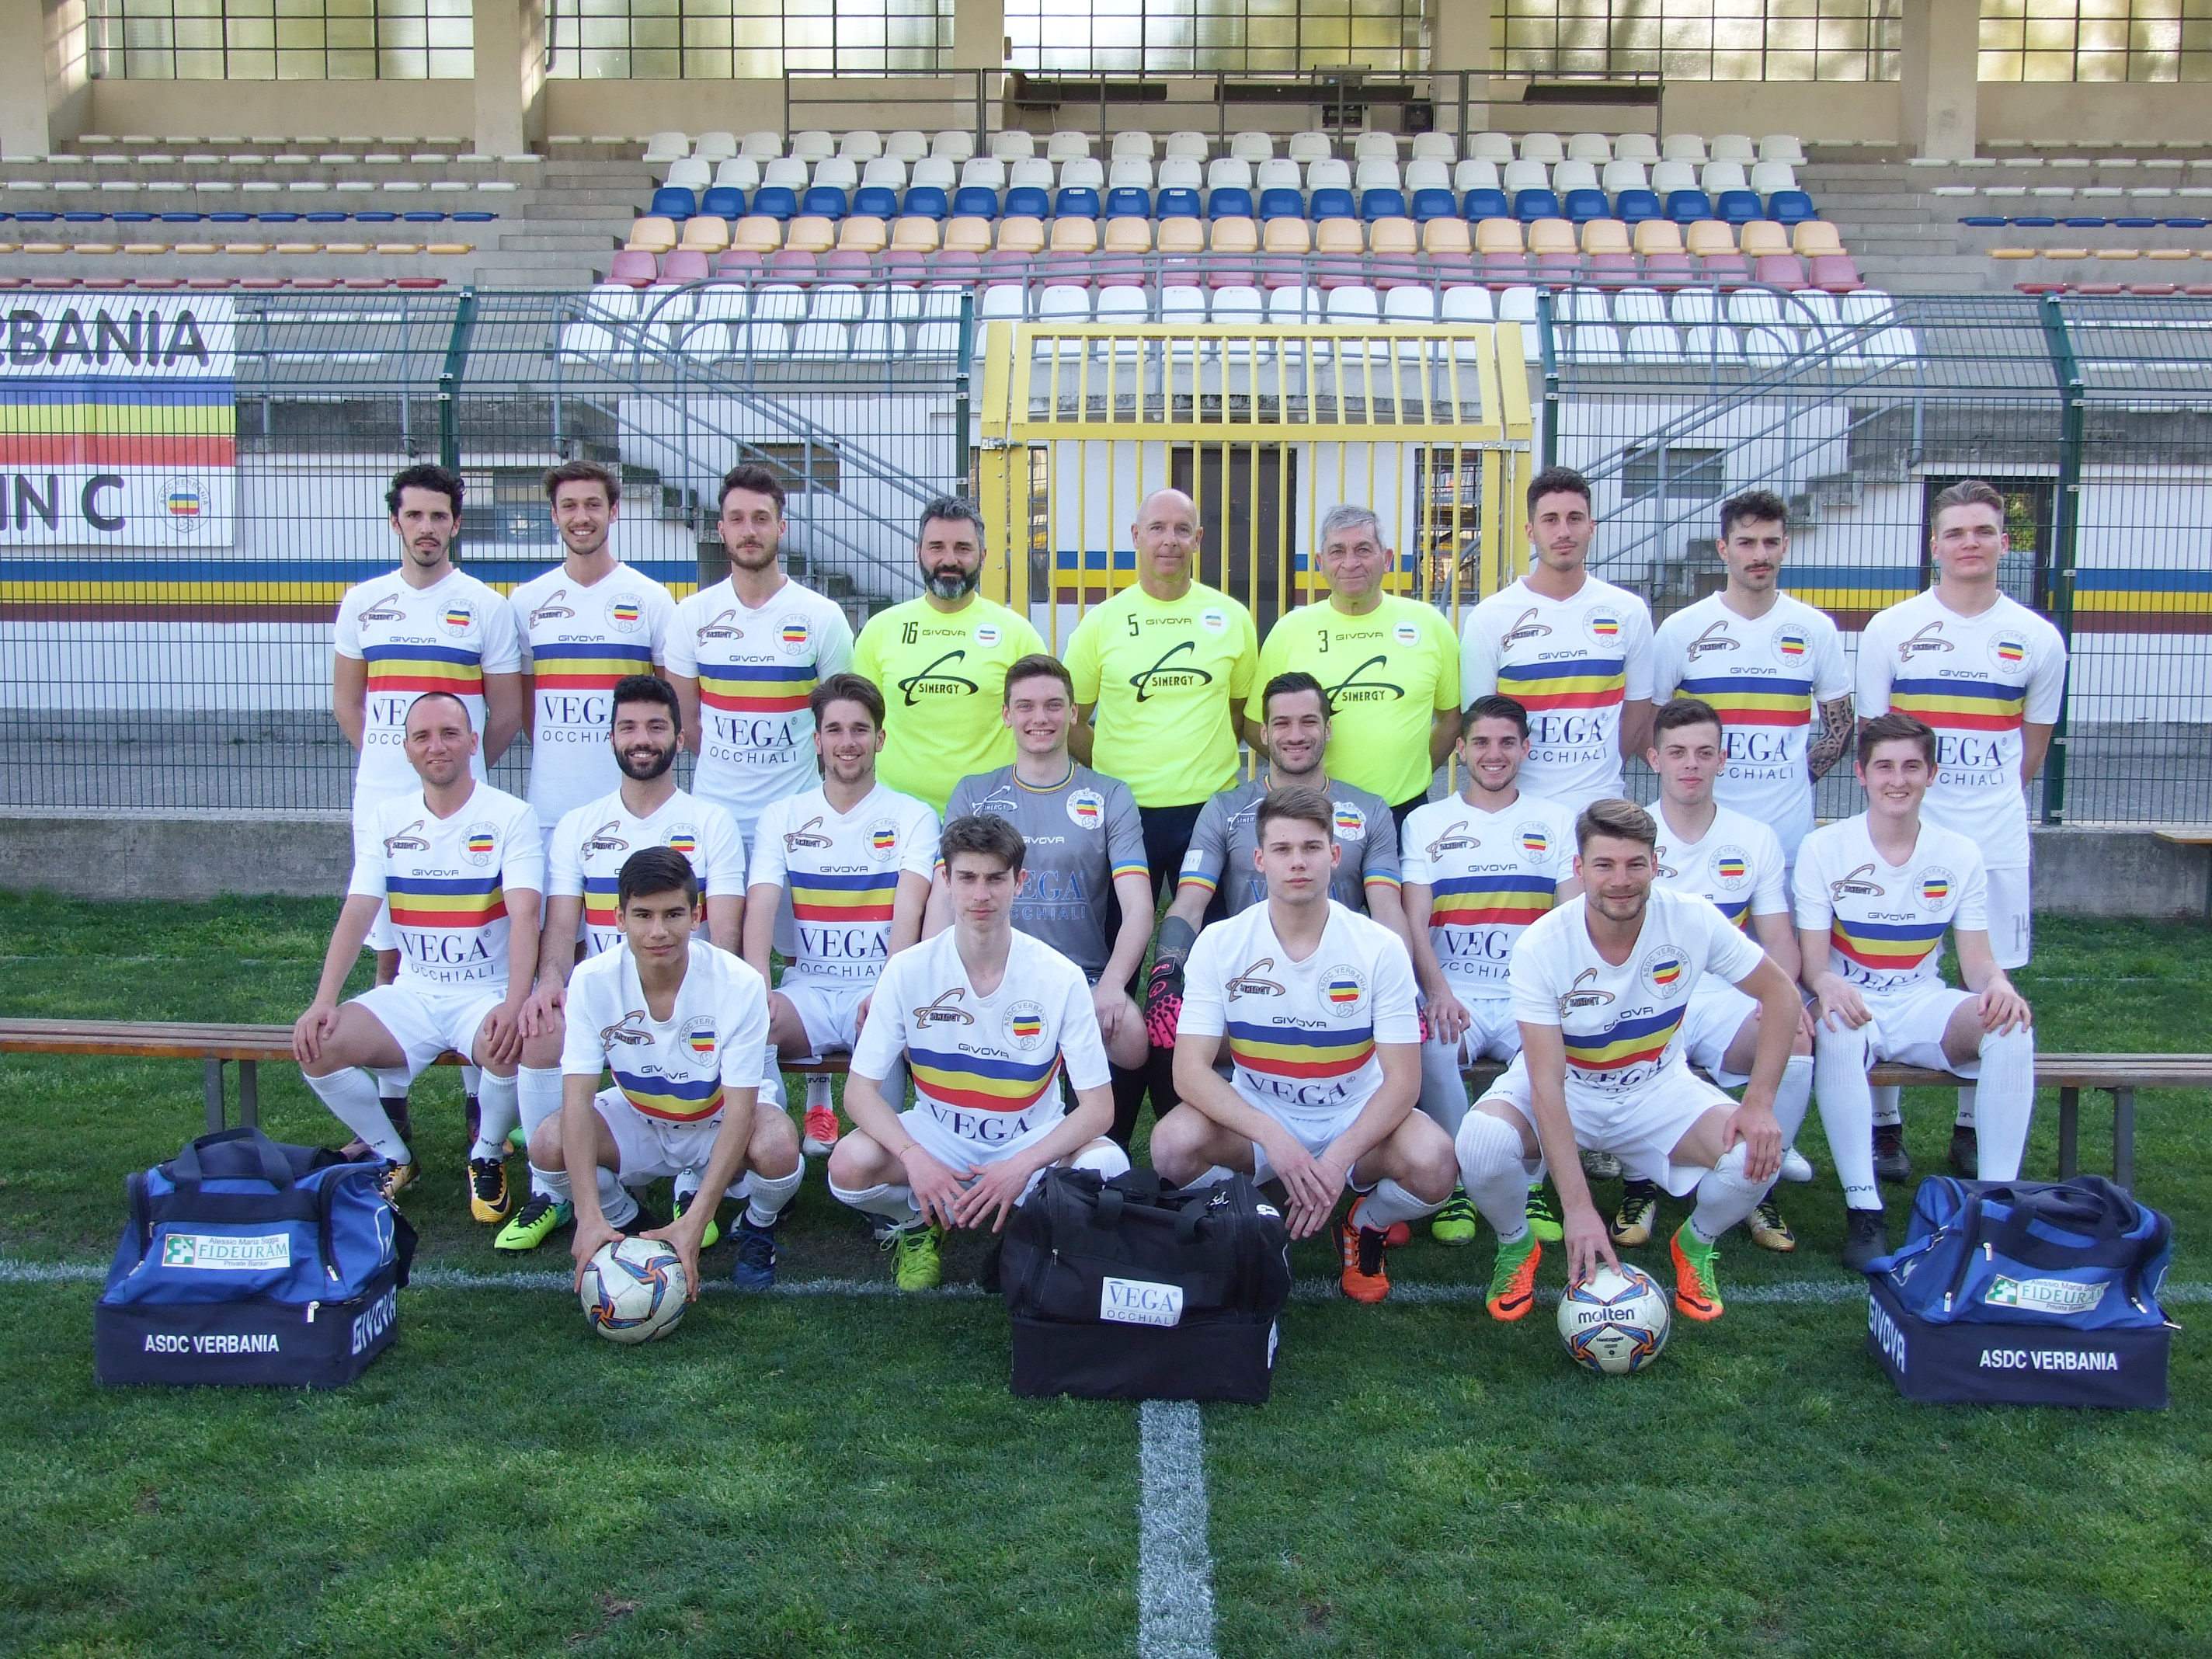 ASDC Verbania, Stagione 2017 - 2018 - Campionato di Eccellenza